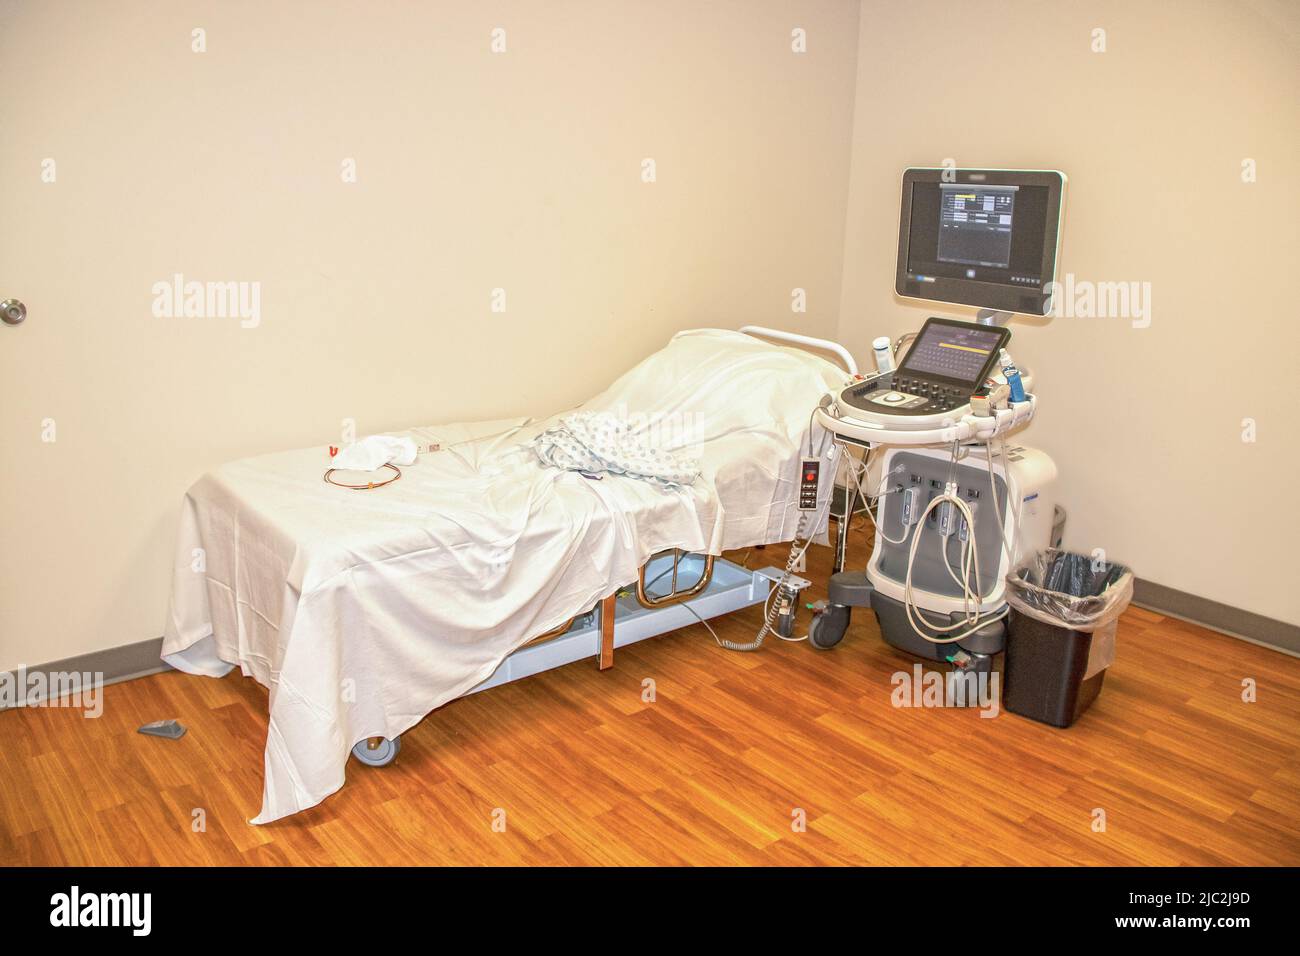 Ein Bett und eine Maschine, um einem Herzpatienten ein Echokardiogramm zu geben - Krankenhausmantel und Elektroden und Drähte, die auf dem Bett liegen Stockfoto